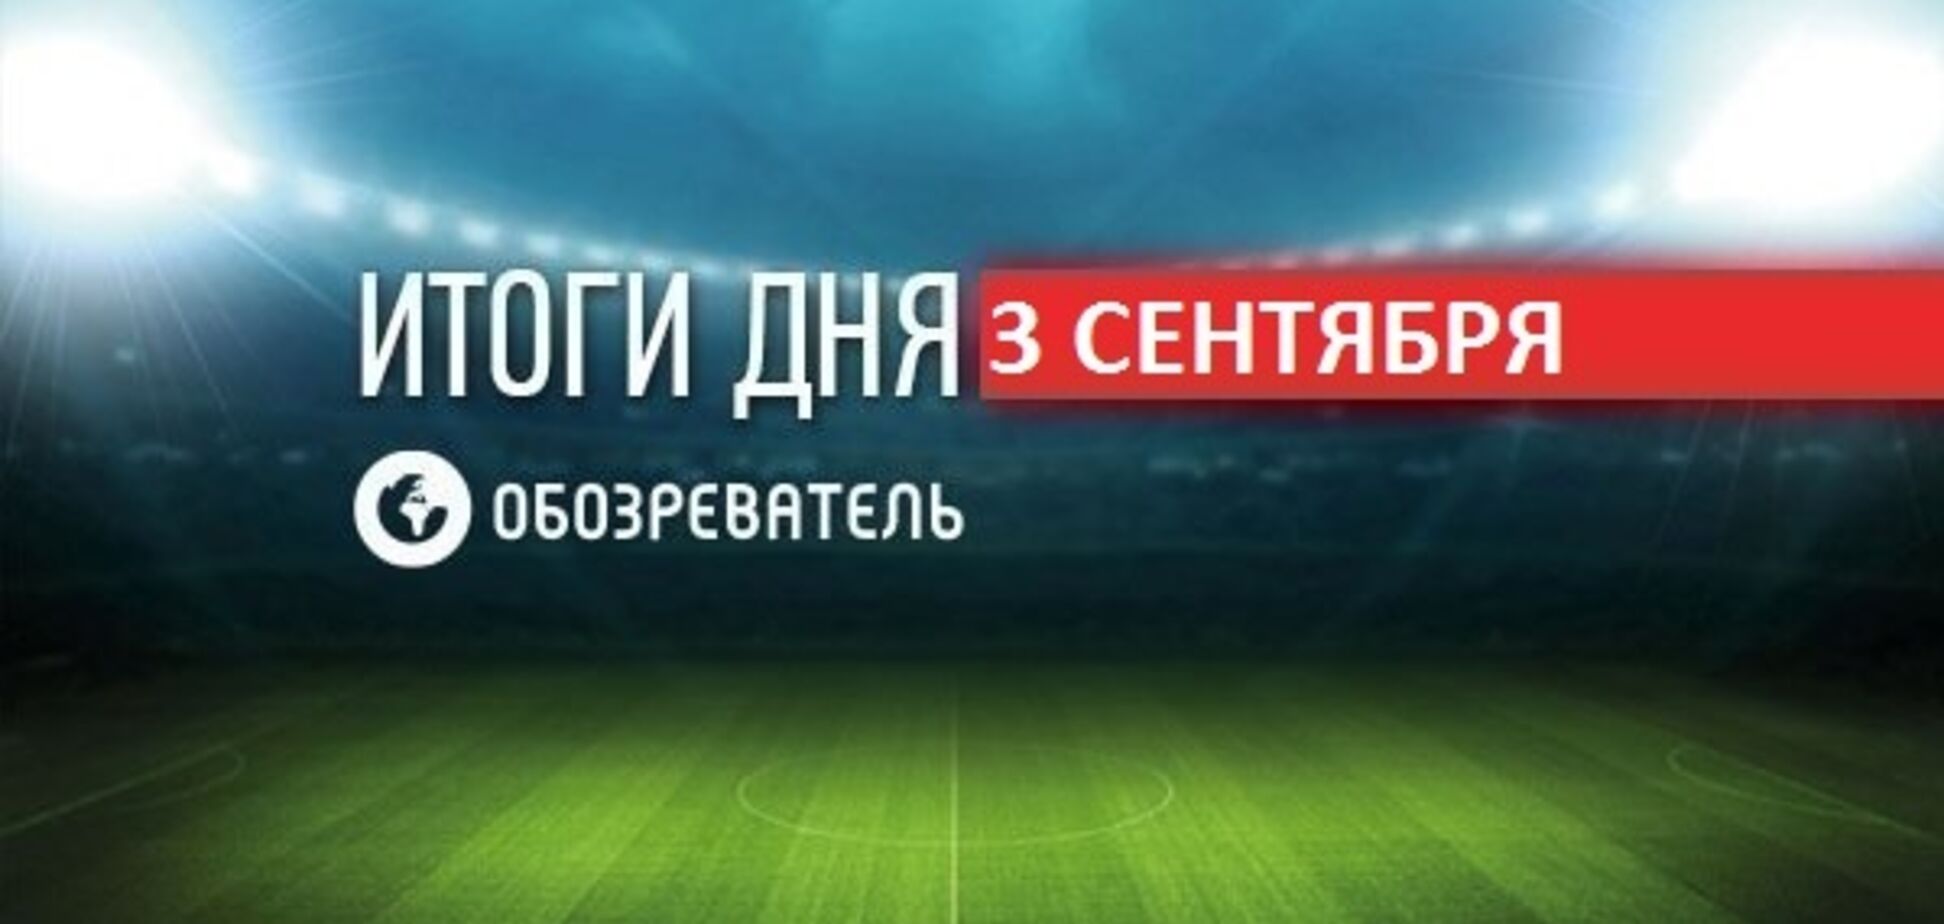 Ломаченко не признал войну с Россией и возмутил украинцев: спортивные итоги 3 сентября